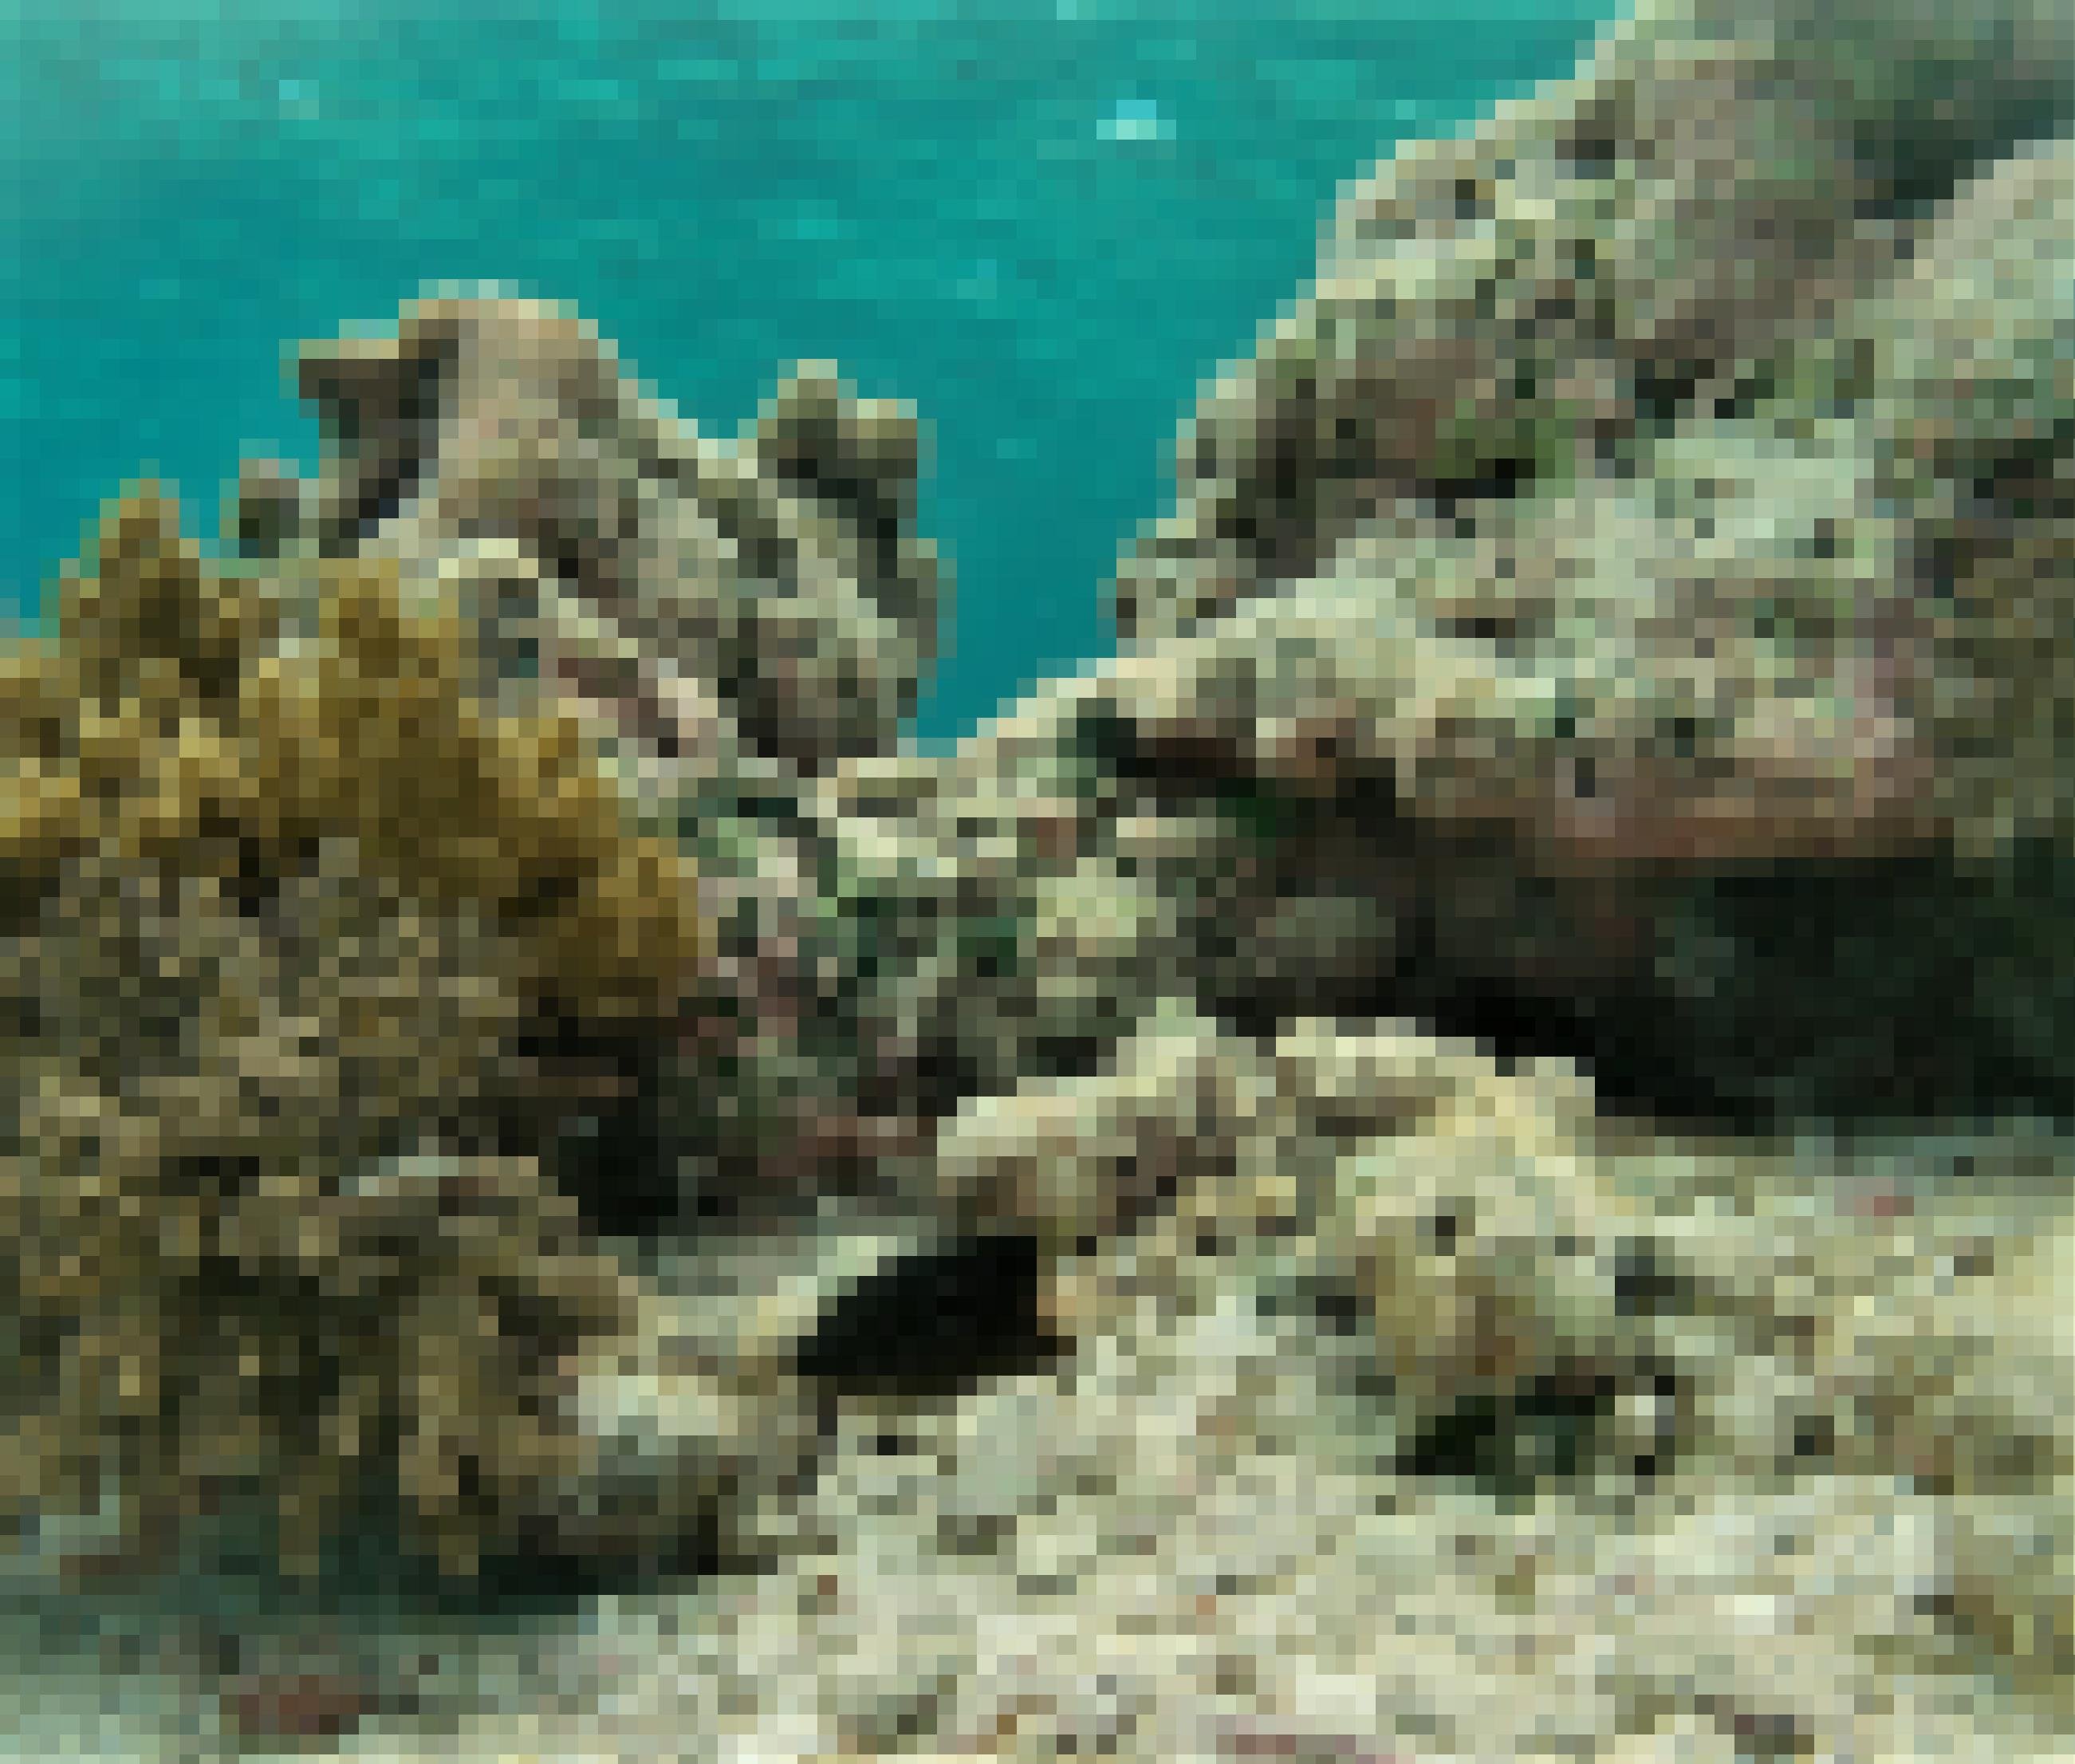 Unterwasserfoto von einem dunklen Rifffisch mit hellen Punkten, der in die Kamera blickt und von Riffstrukturen umgeben ist.